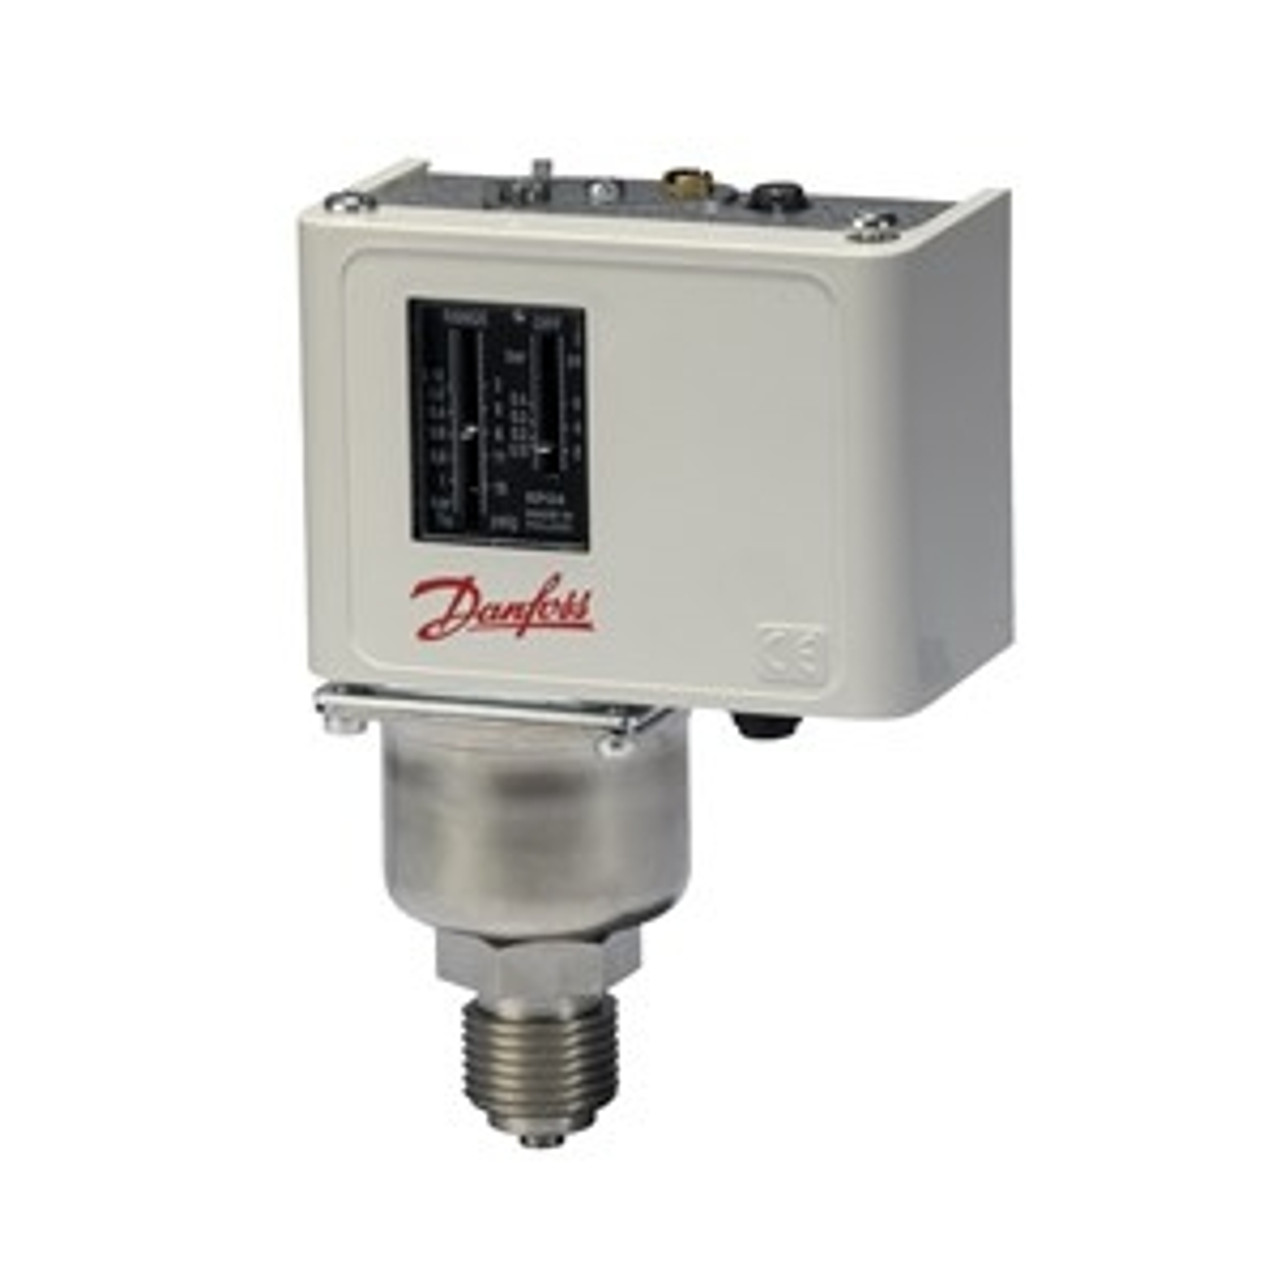 Danfoss KP34 pressure switches for boiler